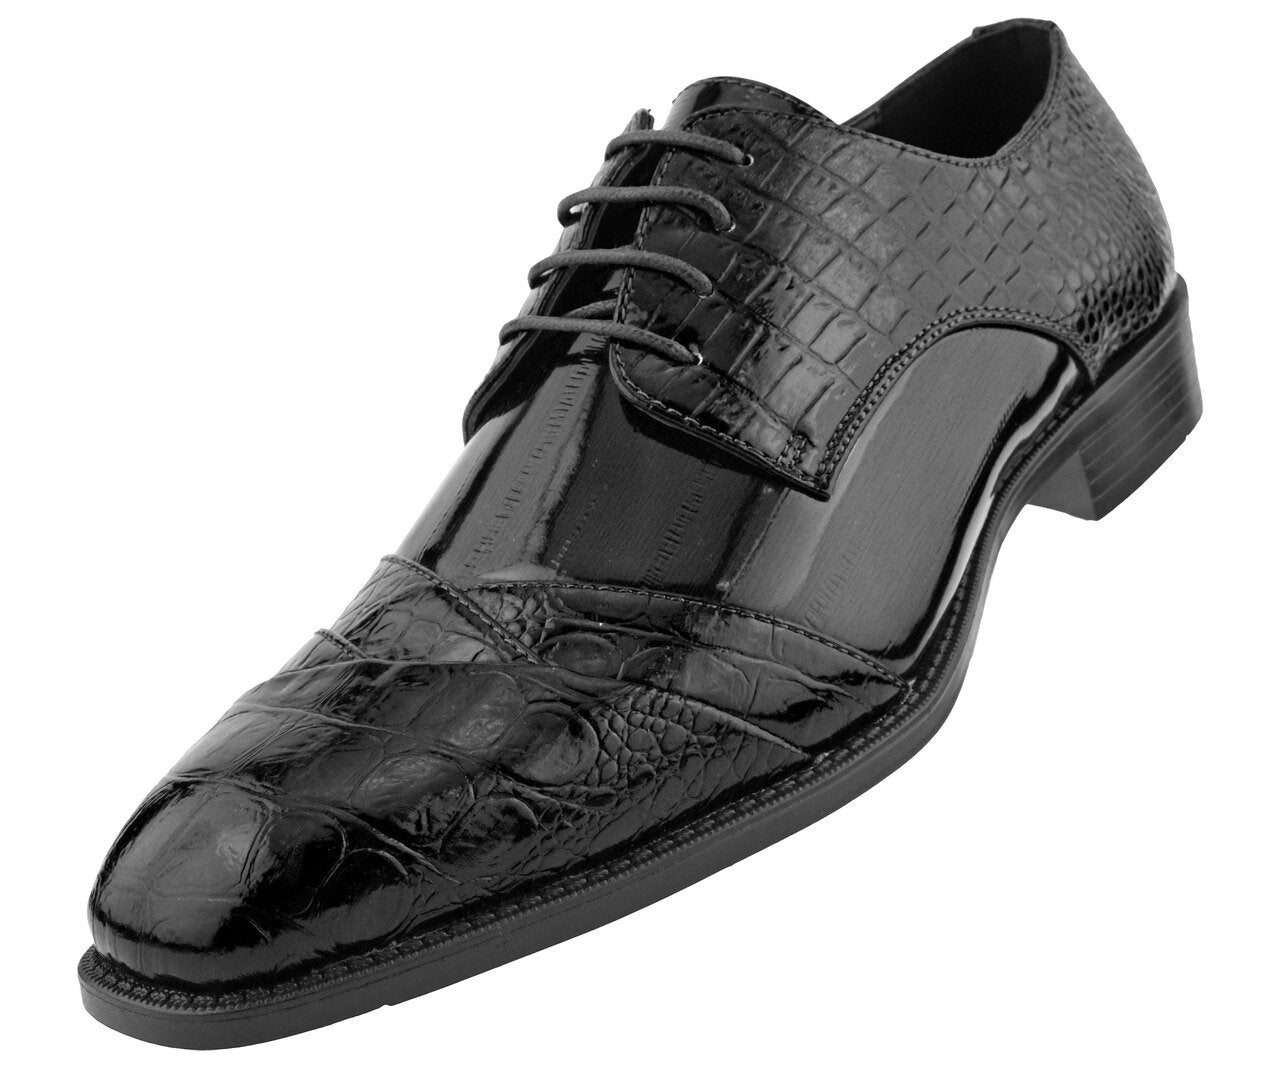 Men Dress Shoes-Alligator-Black - Church Suits For Less